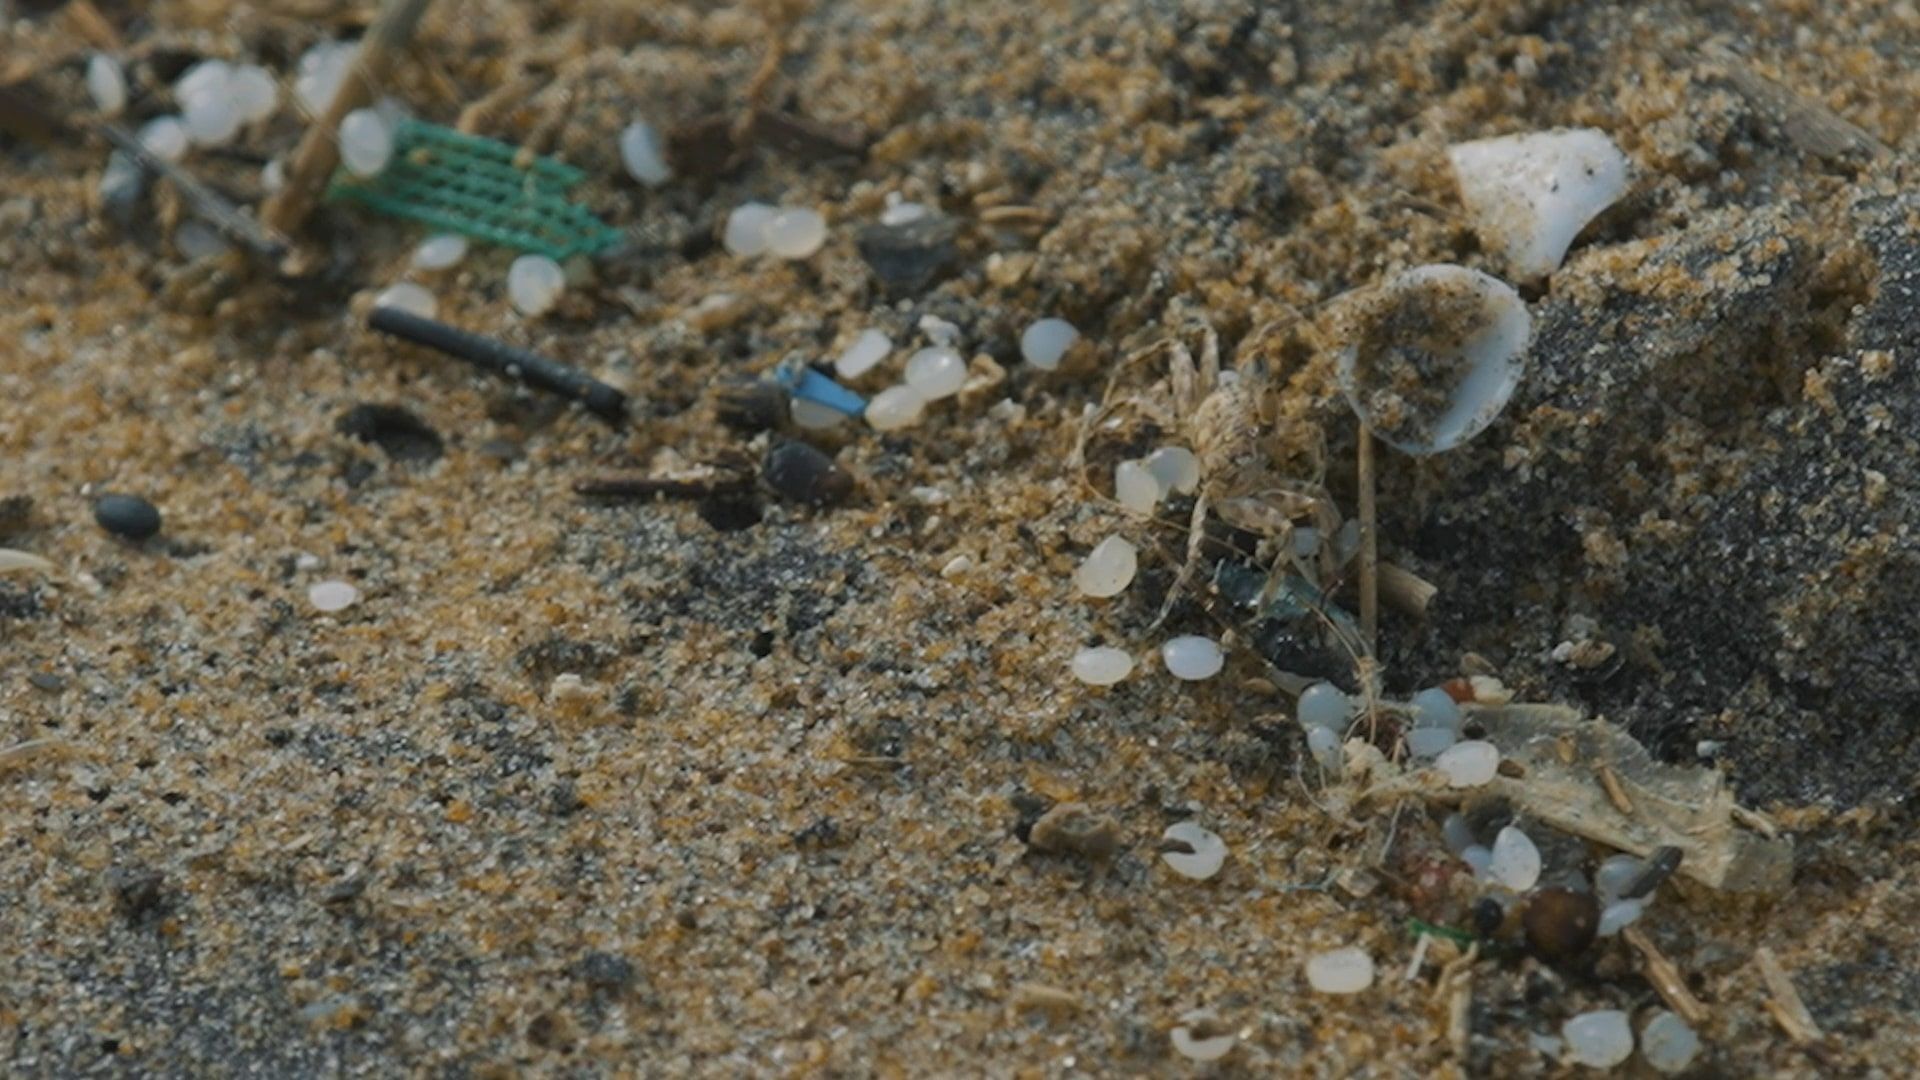 Plastikgranulat (Nurdles) am Strand: Millimetergroße Kügelchen, die nur schwer aufzusammeln sind